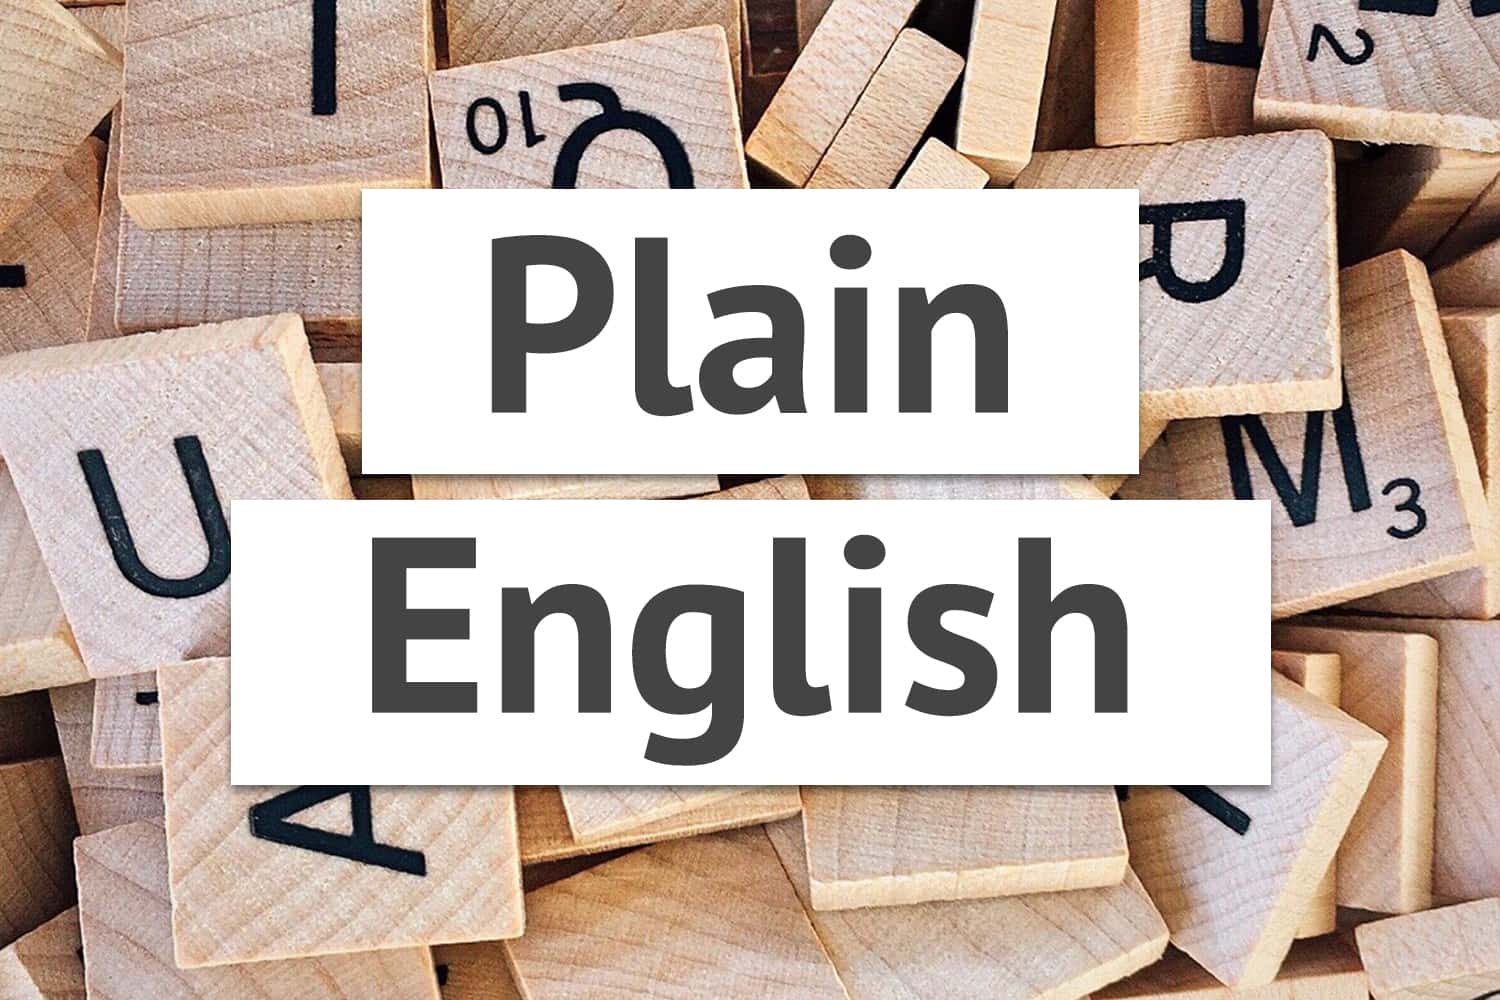 Title "Plain English" over Scrabble block letters